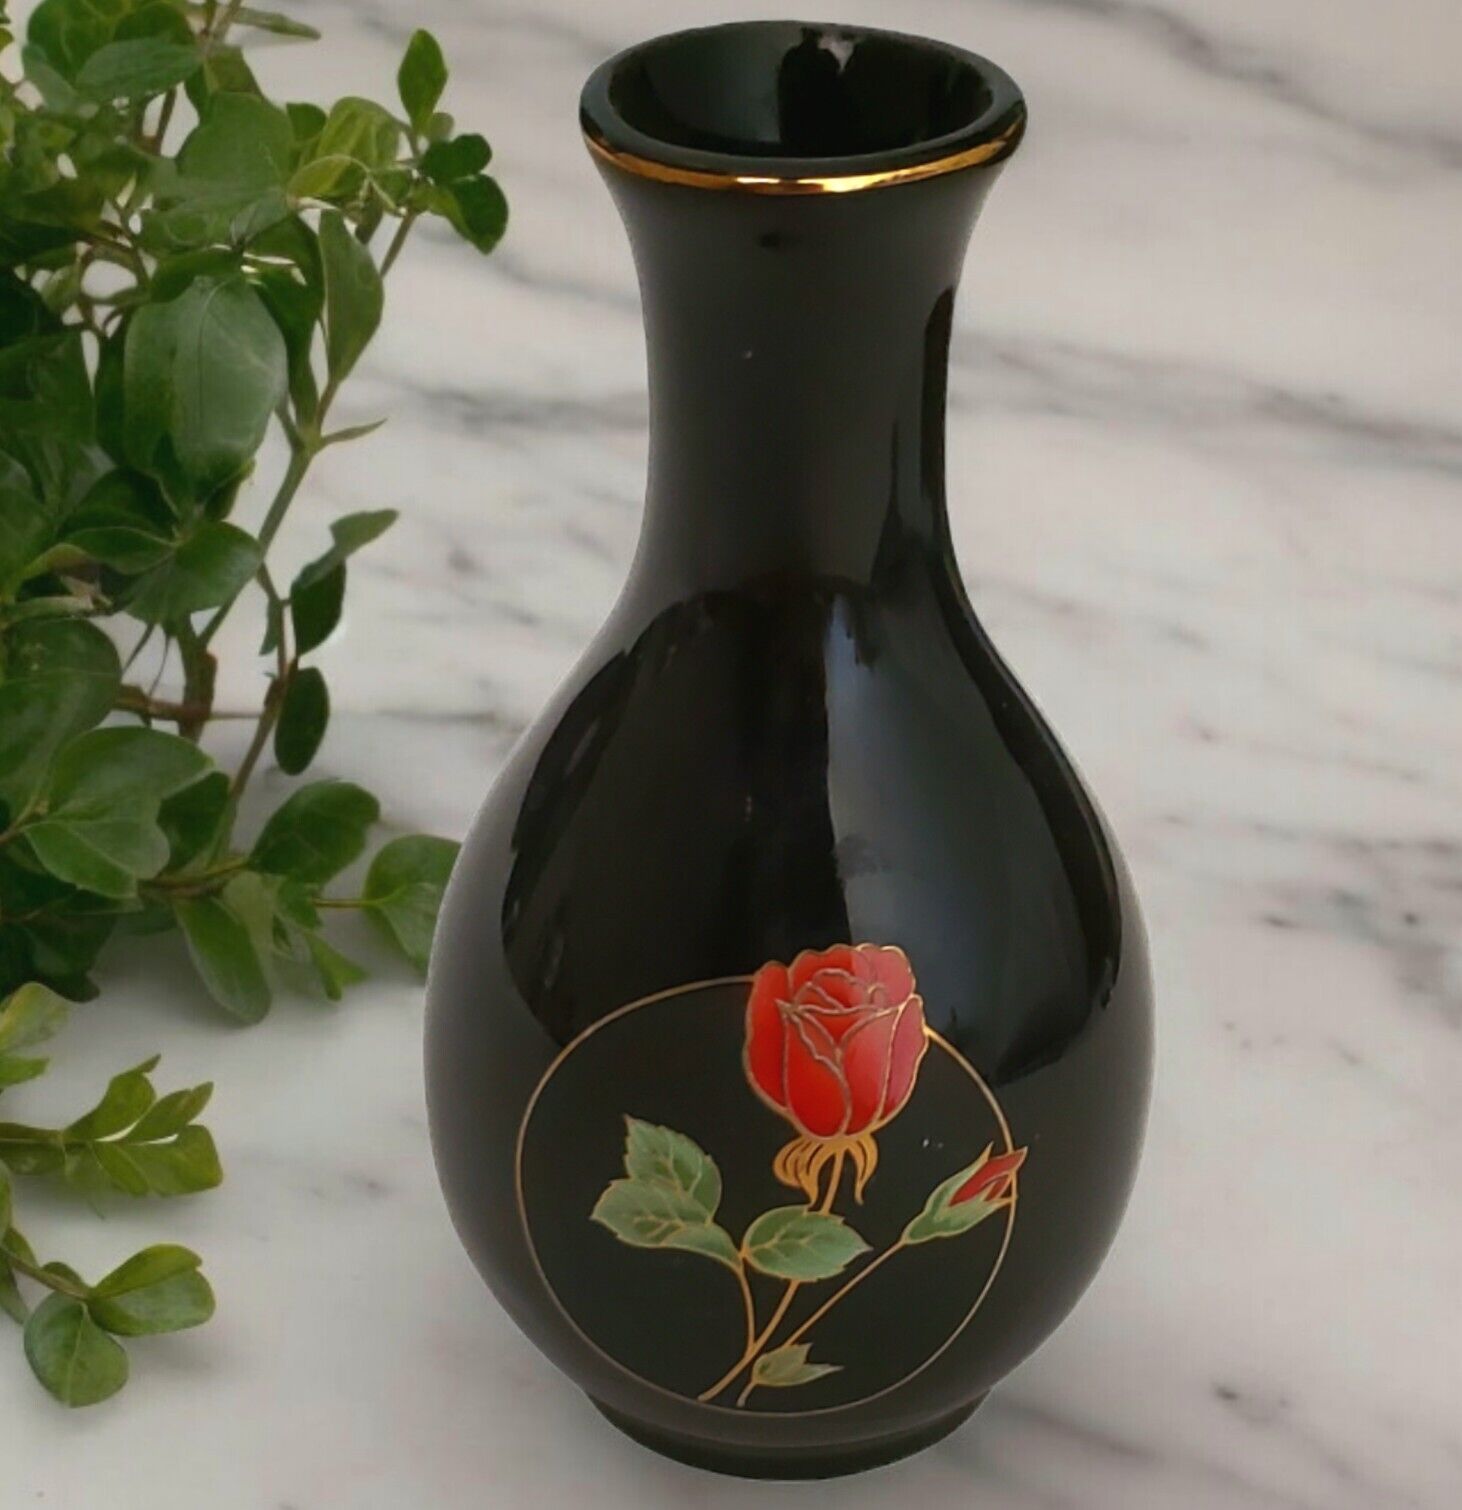 Otagiri Crimson Rose Bud Vase Black Porcelain Gold Trim Japan VTG Red Flower 4.5